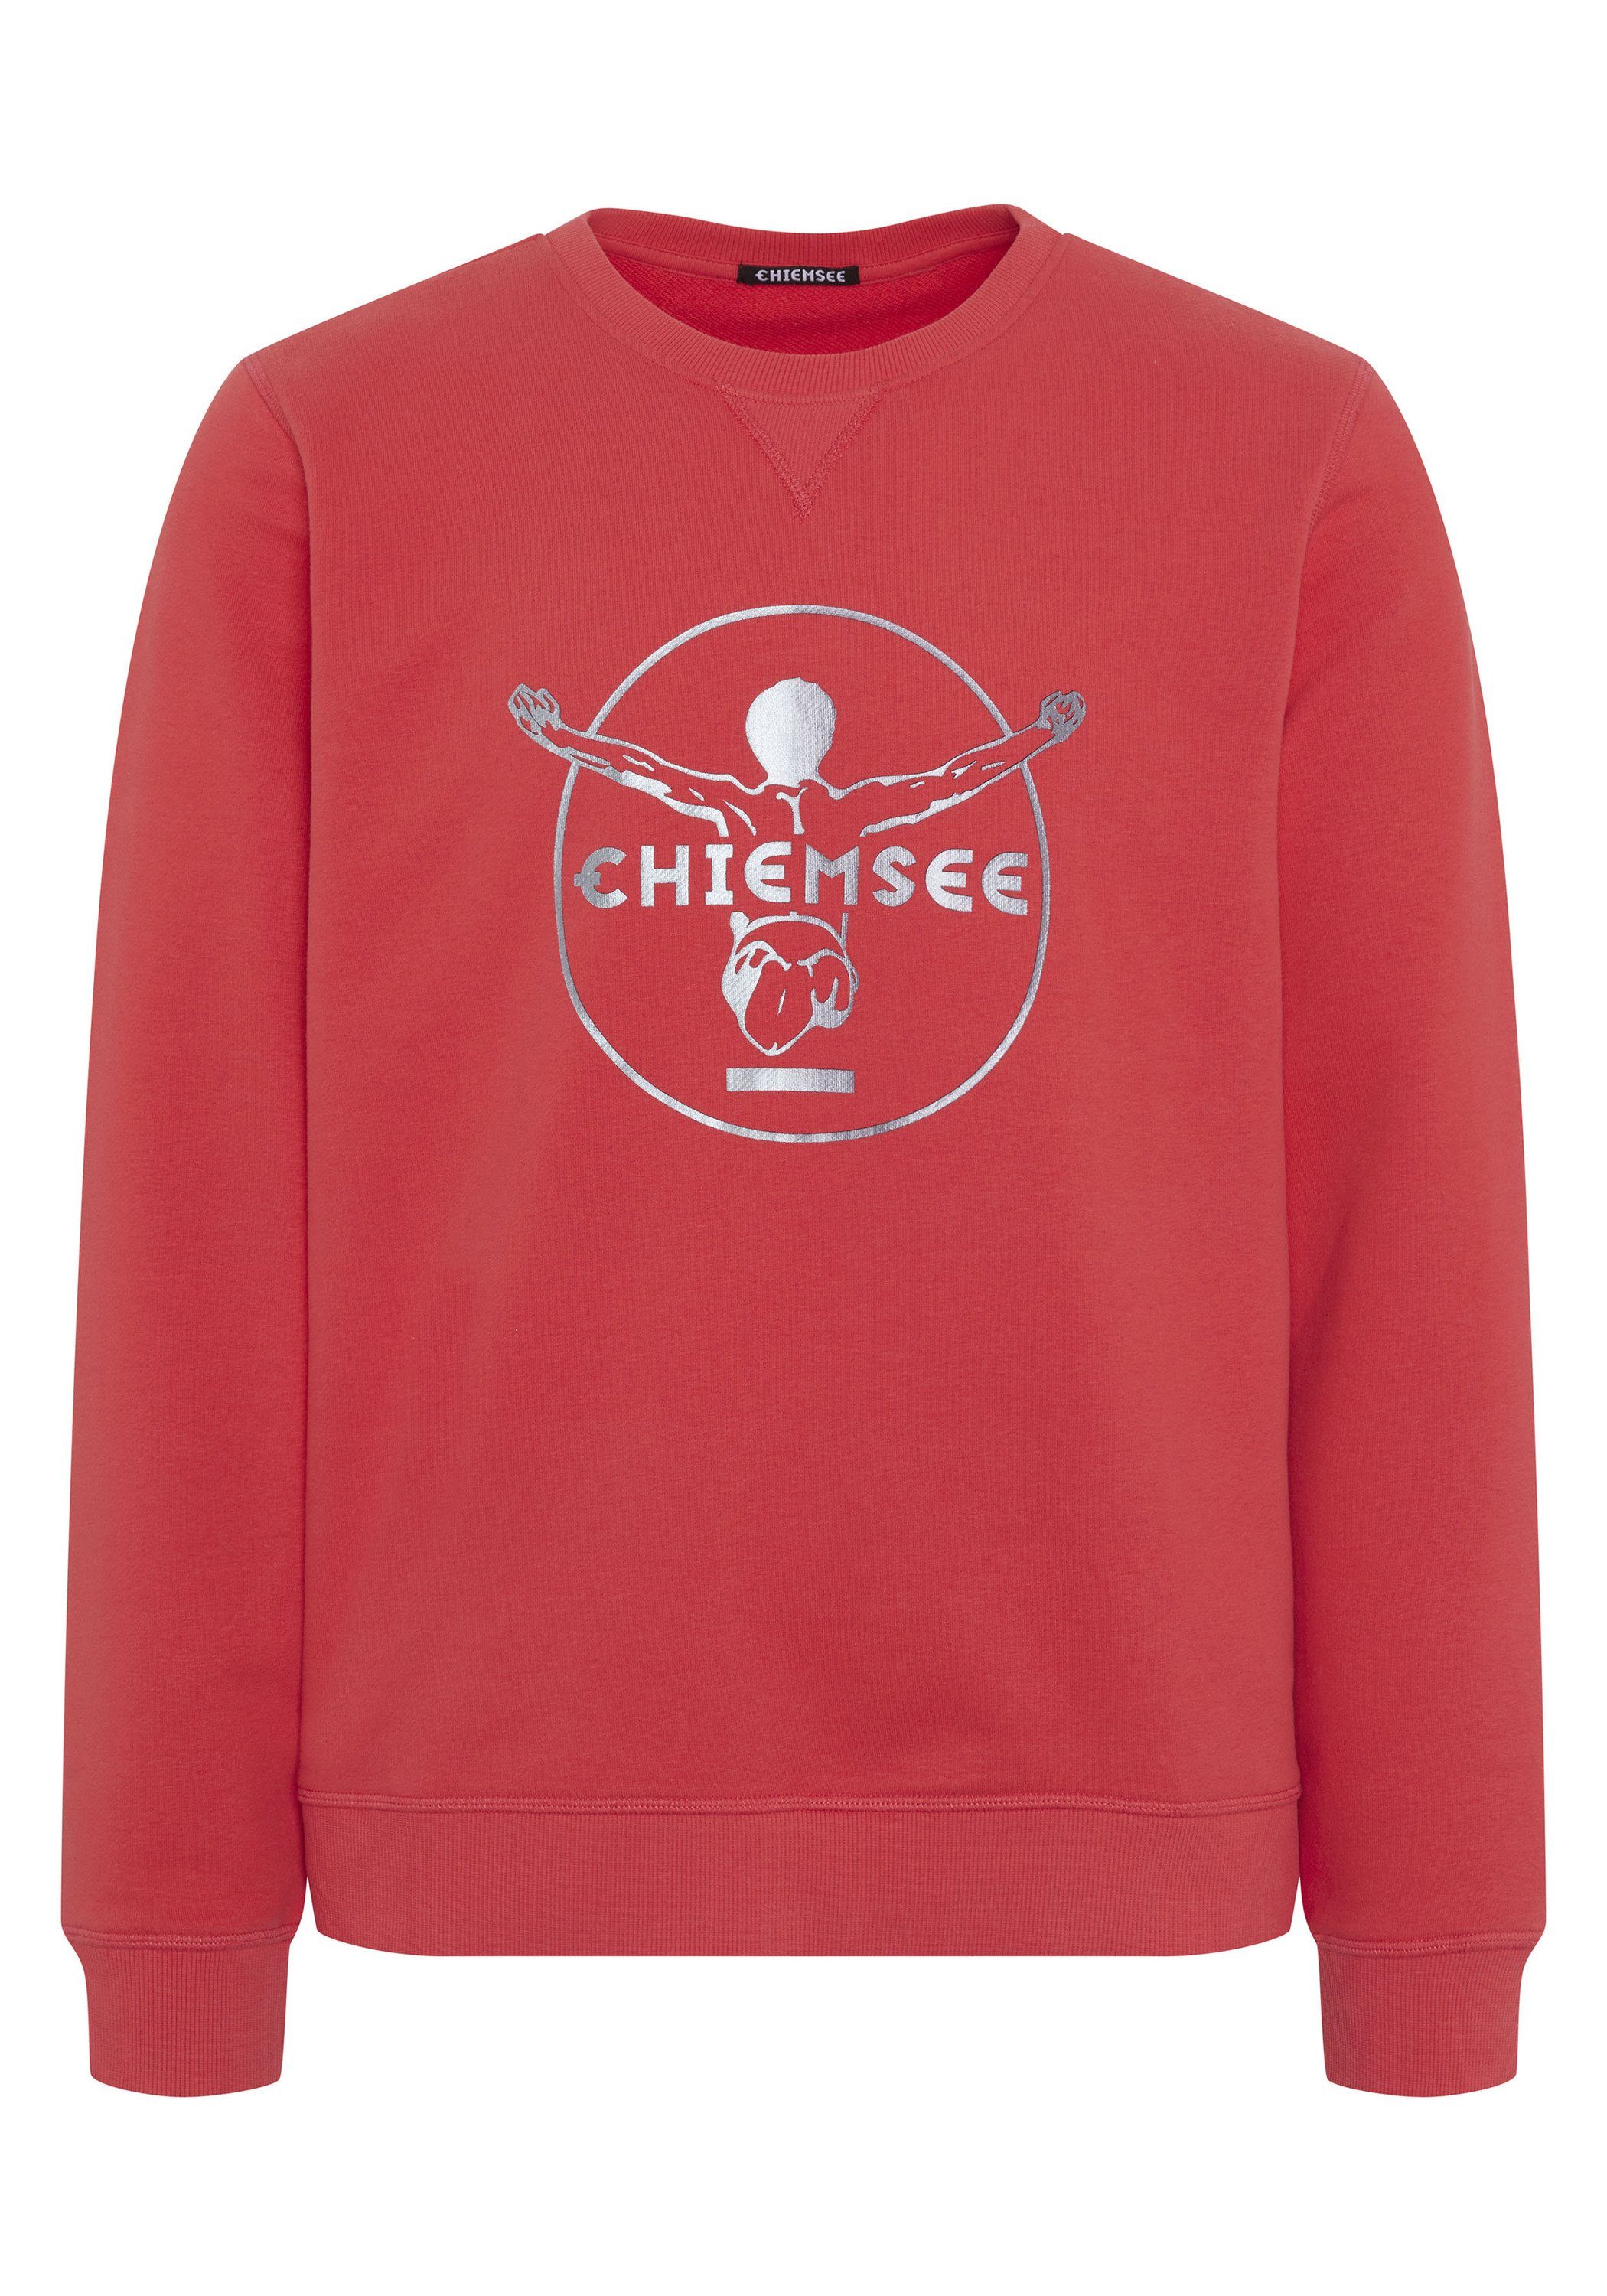 Chiemsee Sweatshirt Sweater im Label-Look 1 17-1663 Bittersweet